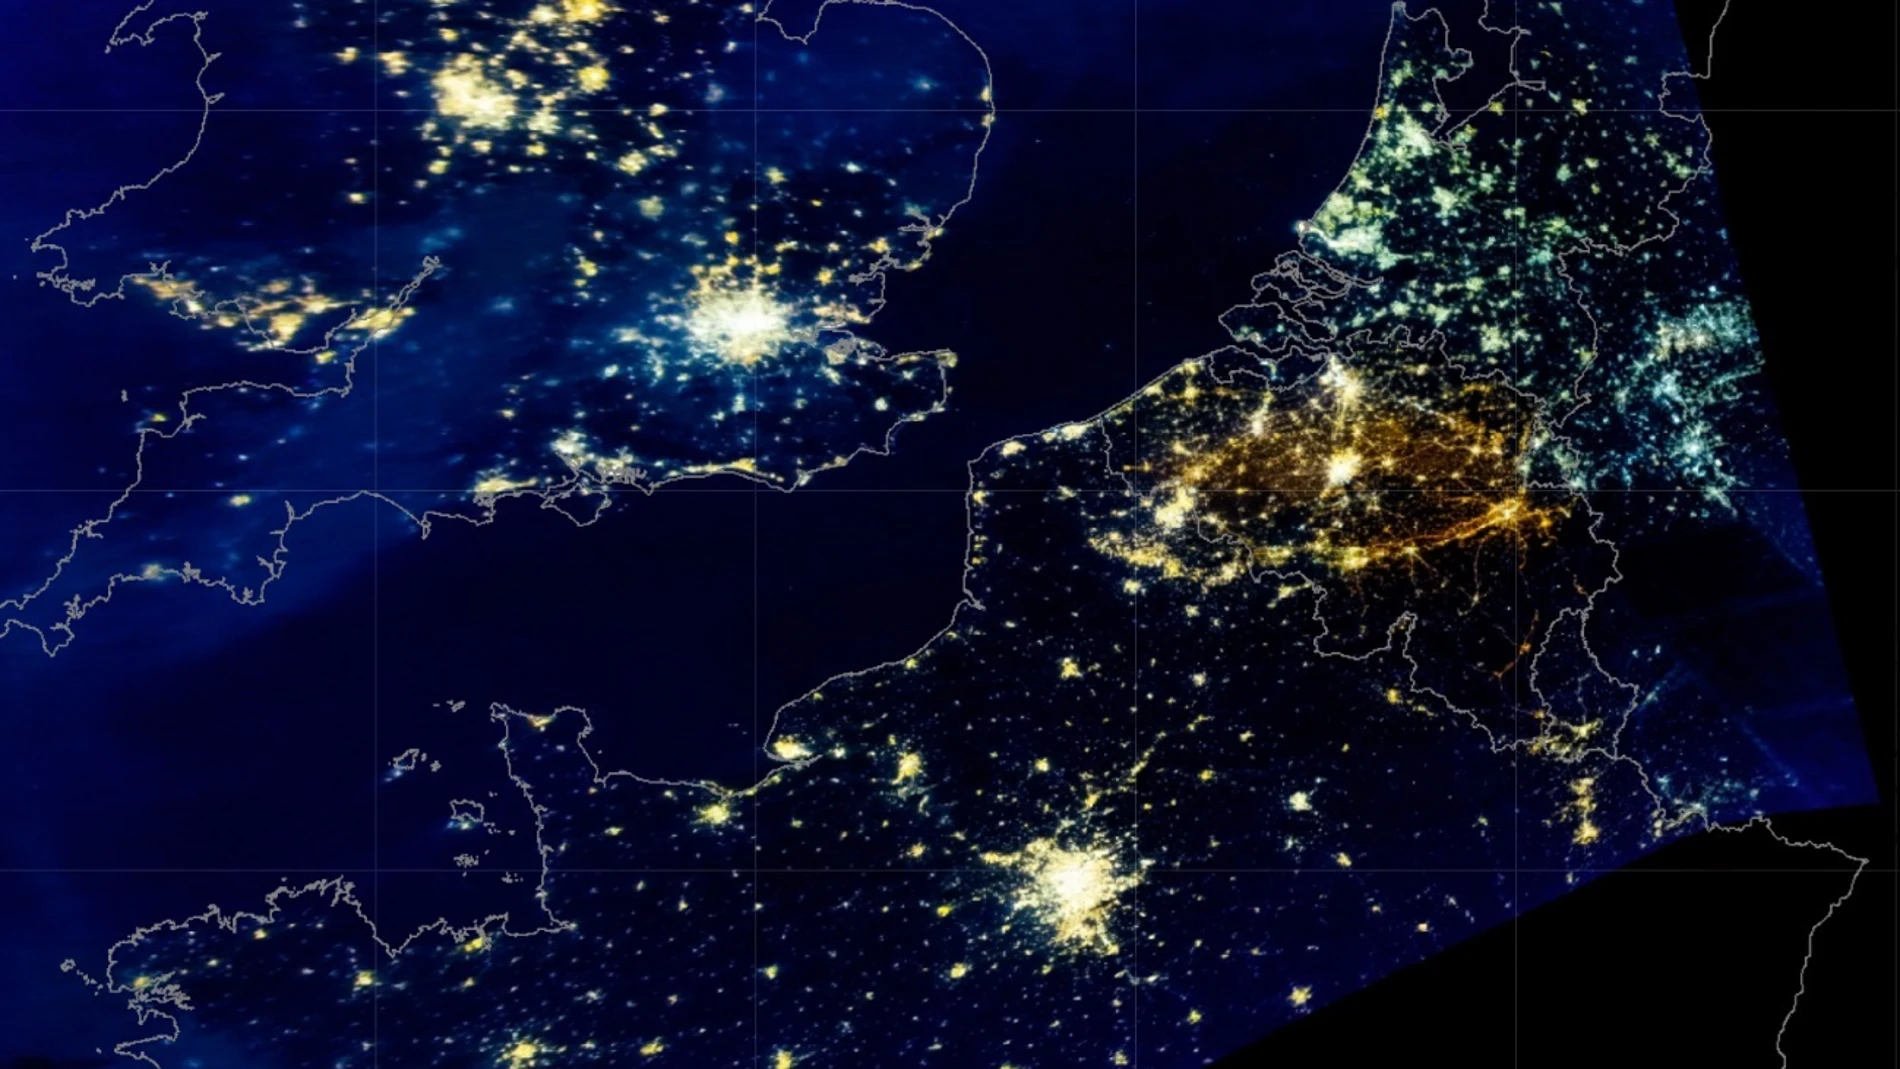 Investigadores de la UCM comprueban que las noches de Europa son cada vez "más brillantes" por la contaminación lumínica. En la imagen, Iluminación de Bélgica, Países Bajos y Alemania